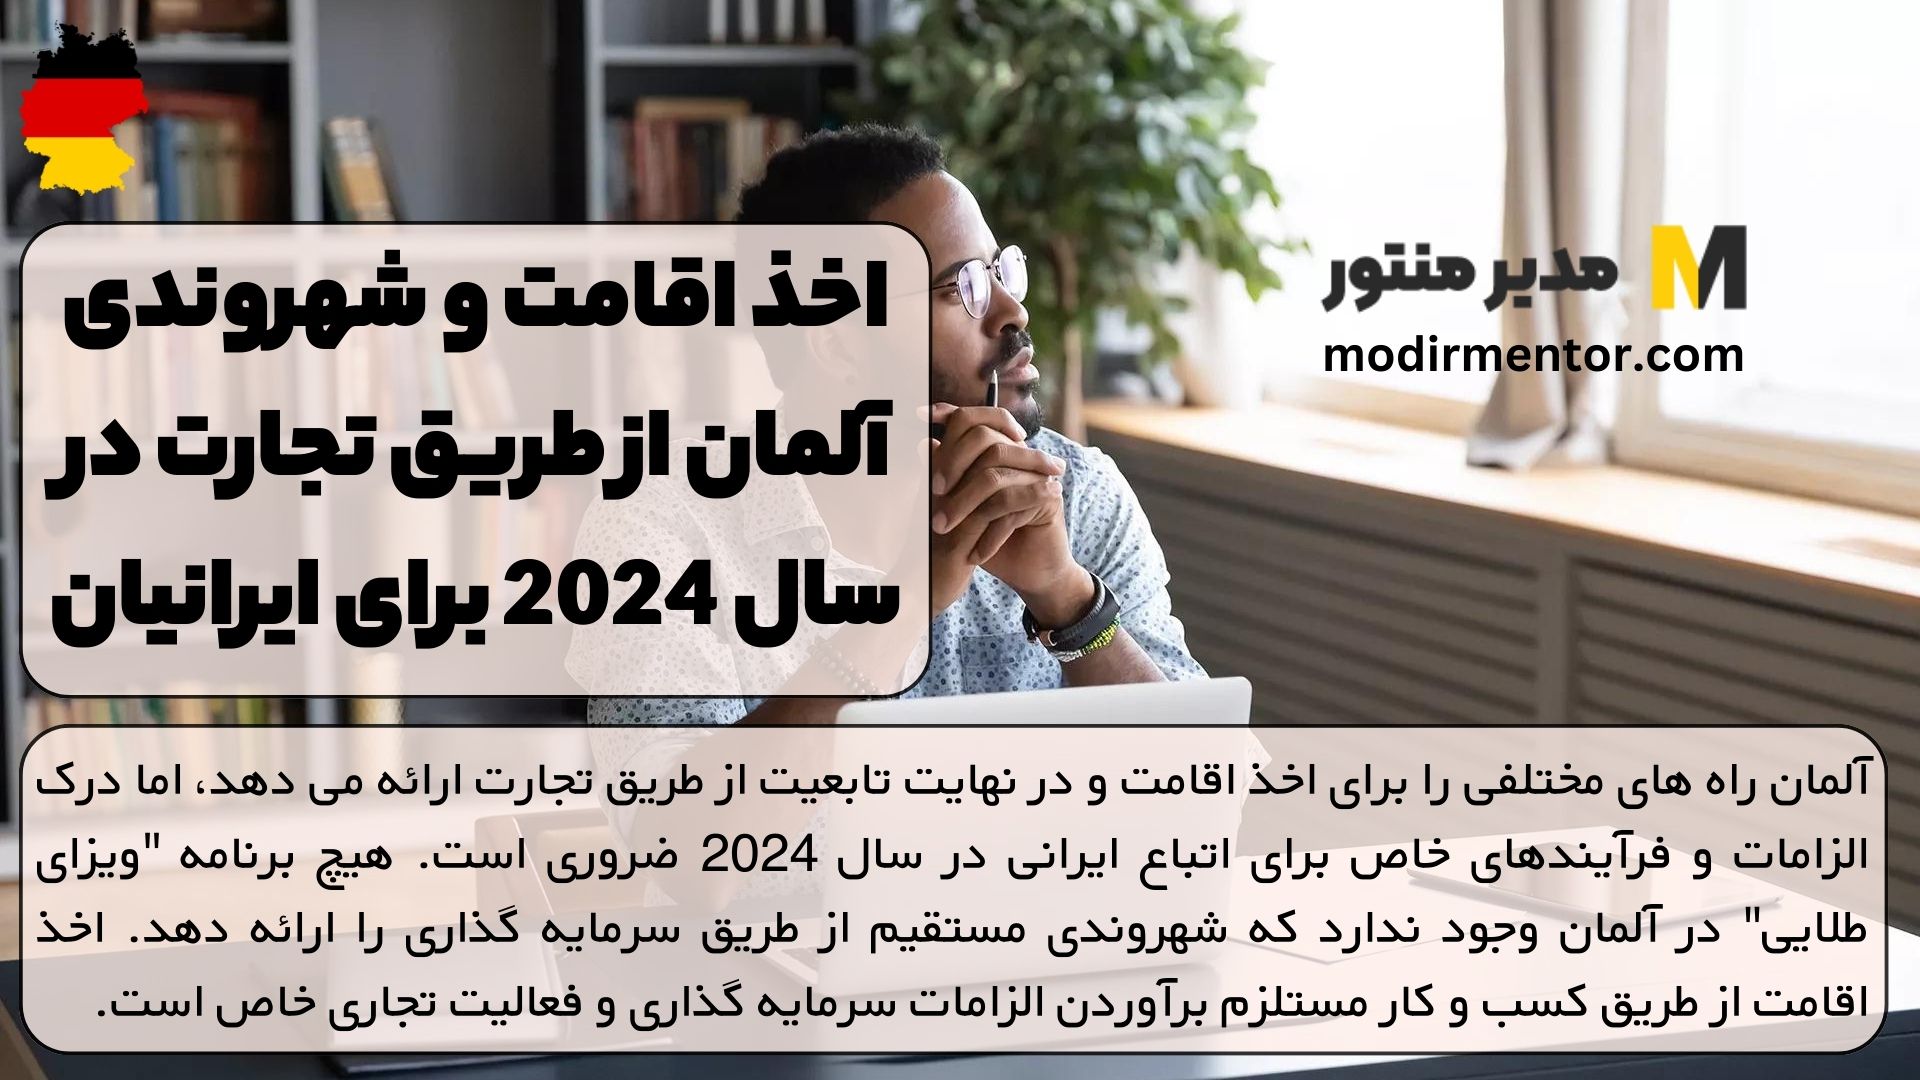 اخذ اقامت و شهروندی آلمان از طریق تجارت در سال 2024 برای ایرانیان